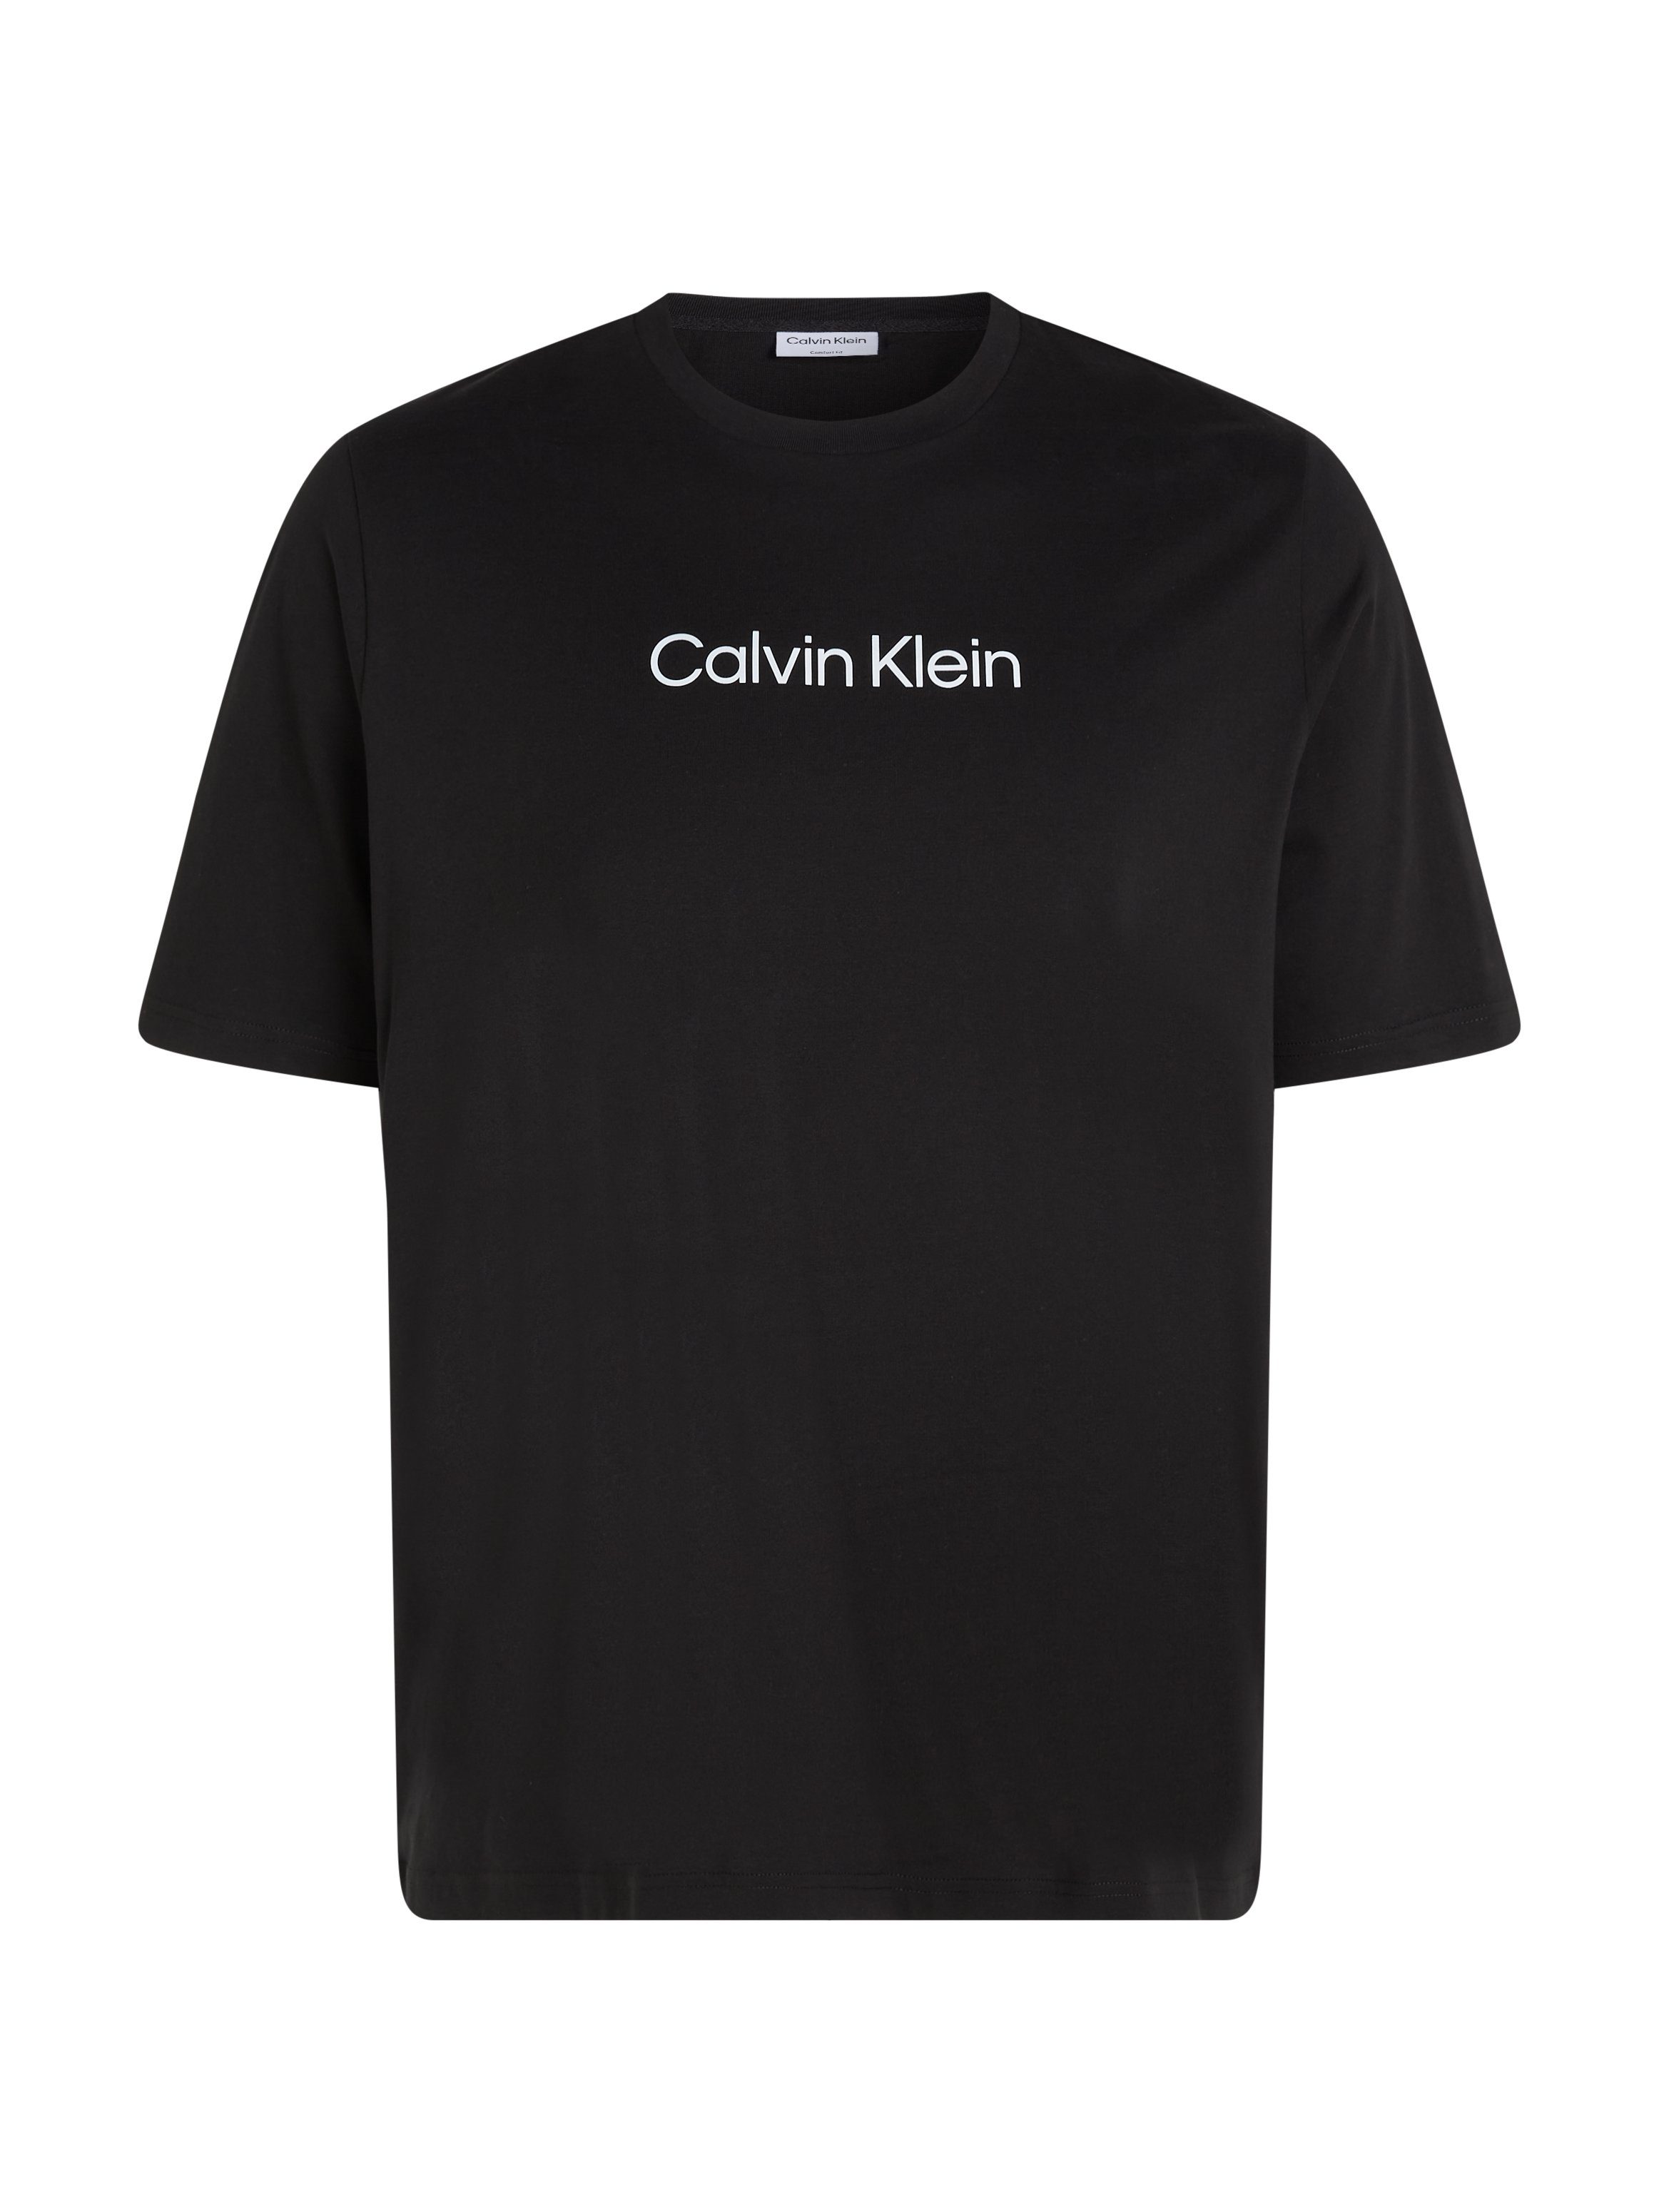 Ck Black T-SHIRT BT-HERO Klein COMFORT LOGO Big&Tall Calvin T-Shirt